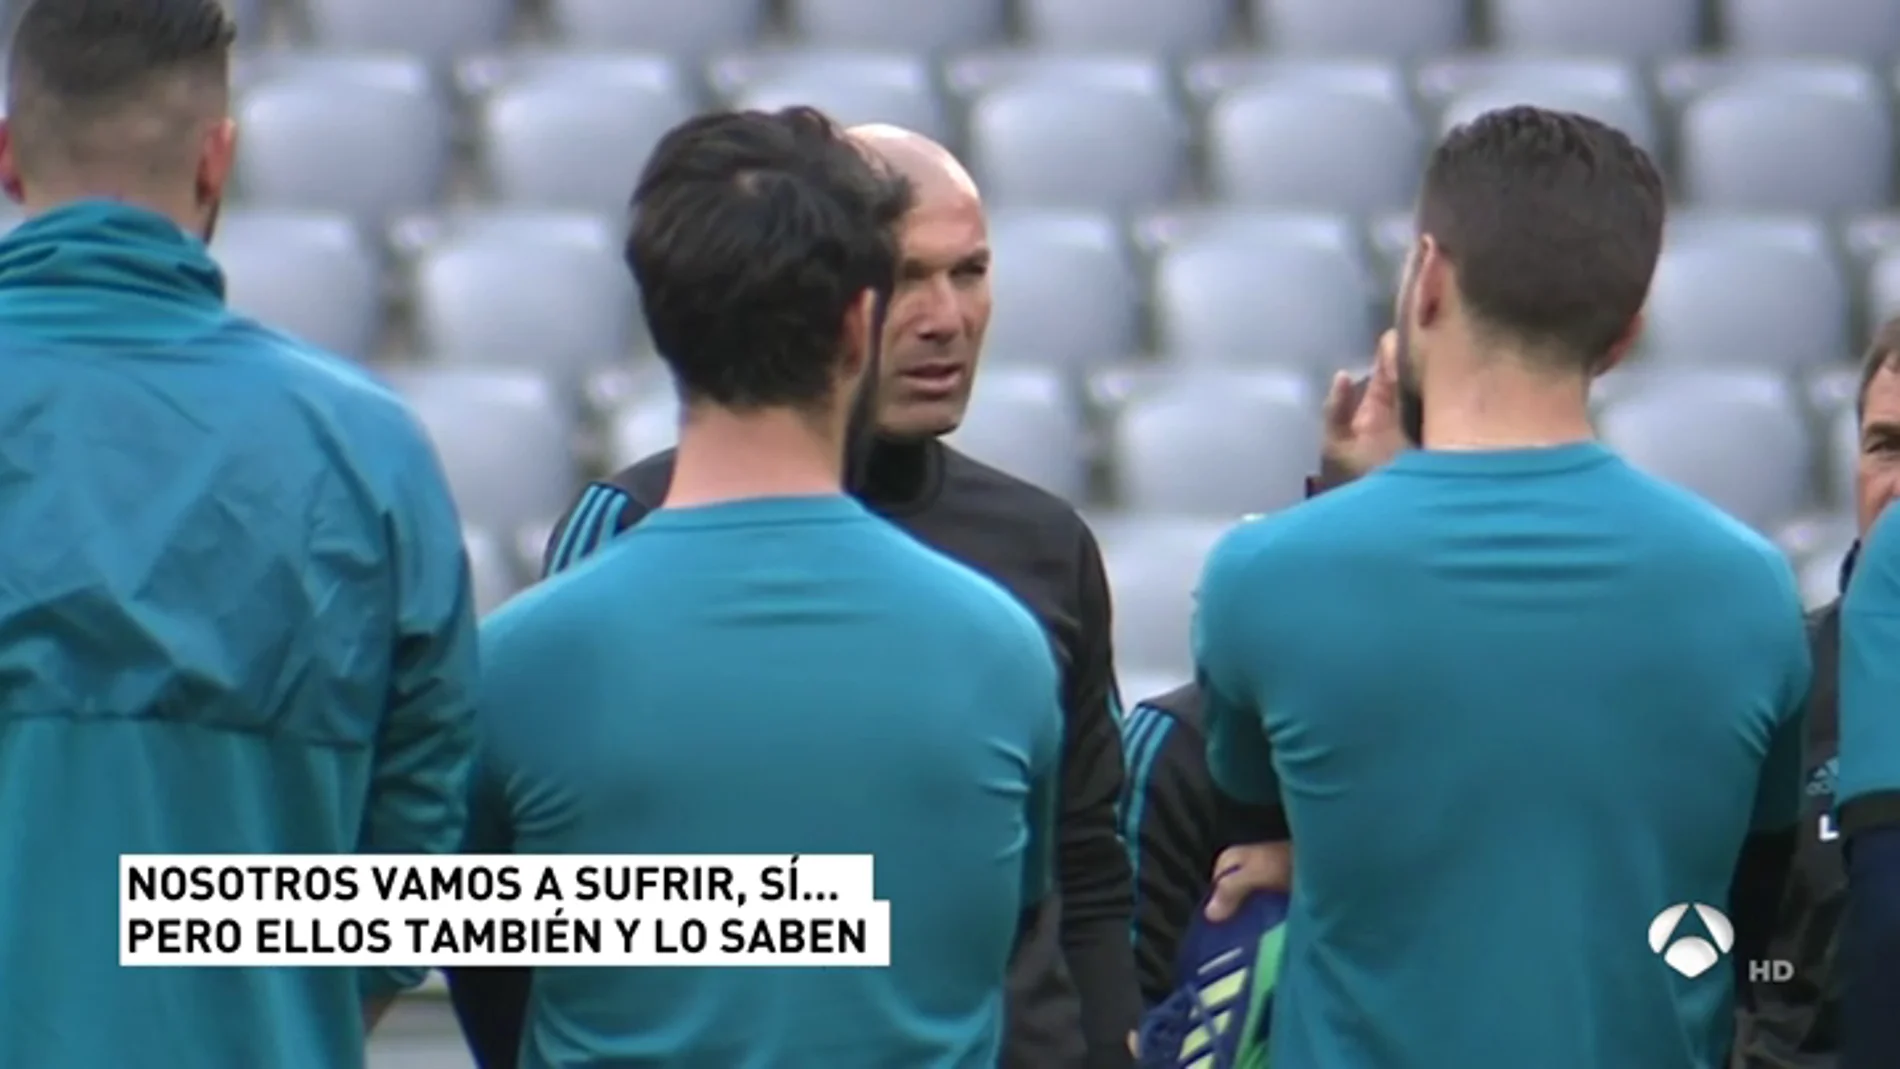 La charla de Zidane a sus jugadores antes del Bayern: "Tenemos que sufrir, pero ellos también... y lo saben"